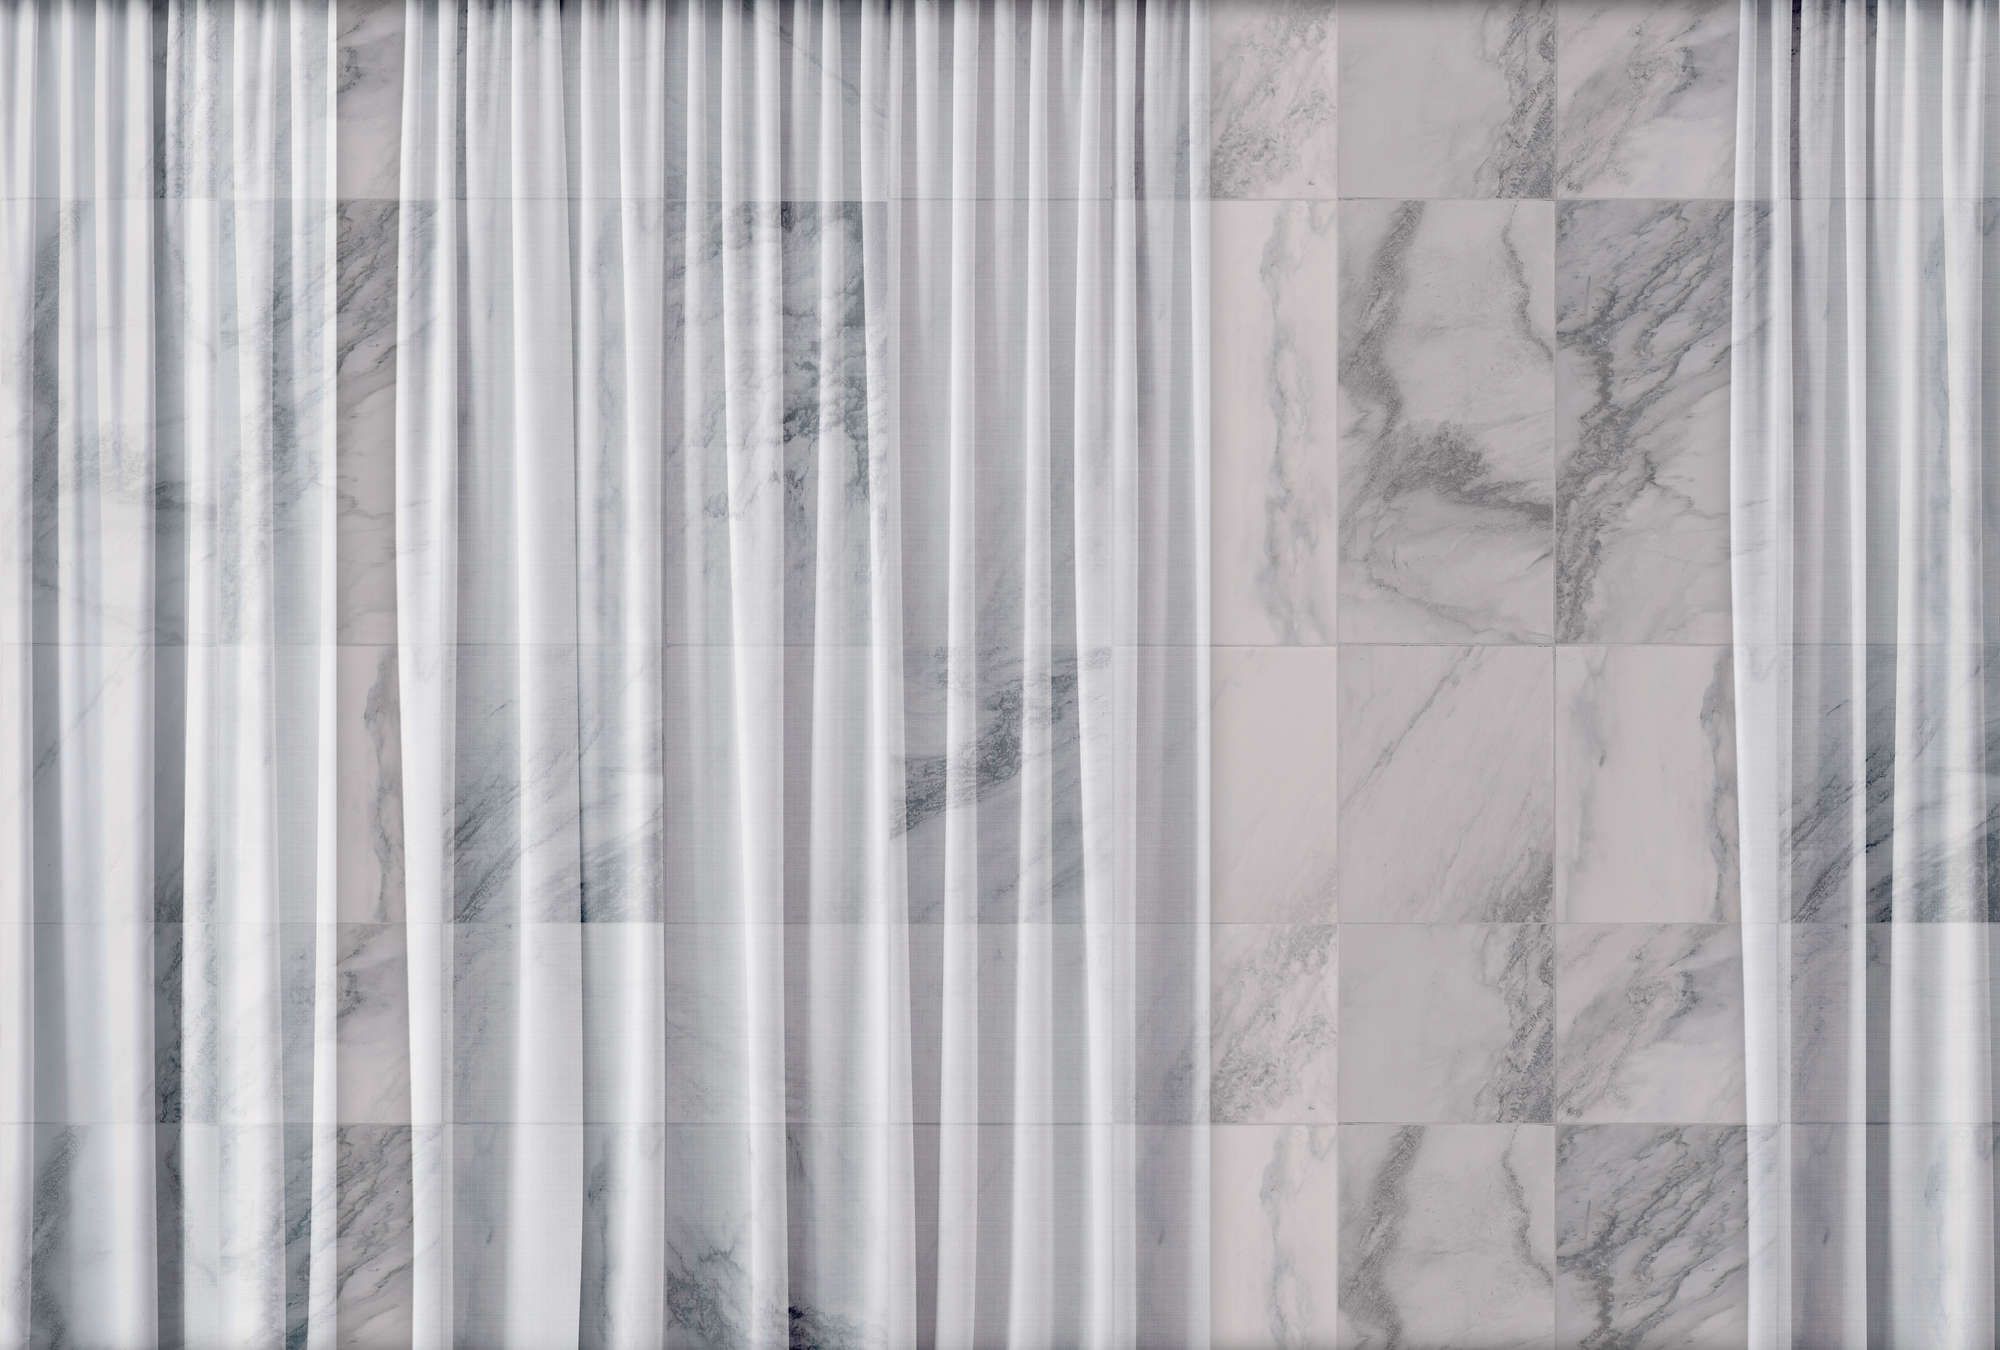             Fotomurali »nova 1« - Sottile tenda bianca cadente davanti a una parete di marmo - Materiali non tessuto liscio e leggermente perlato
        